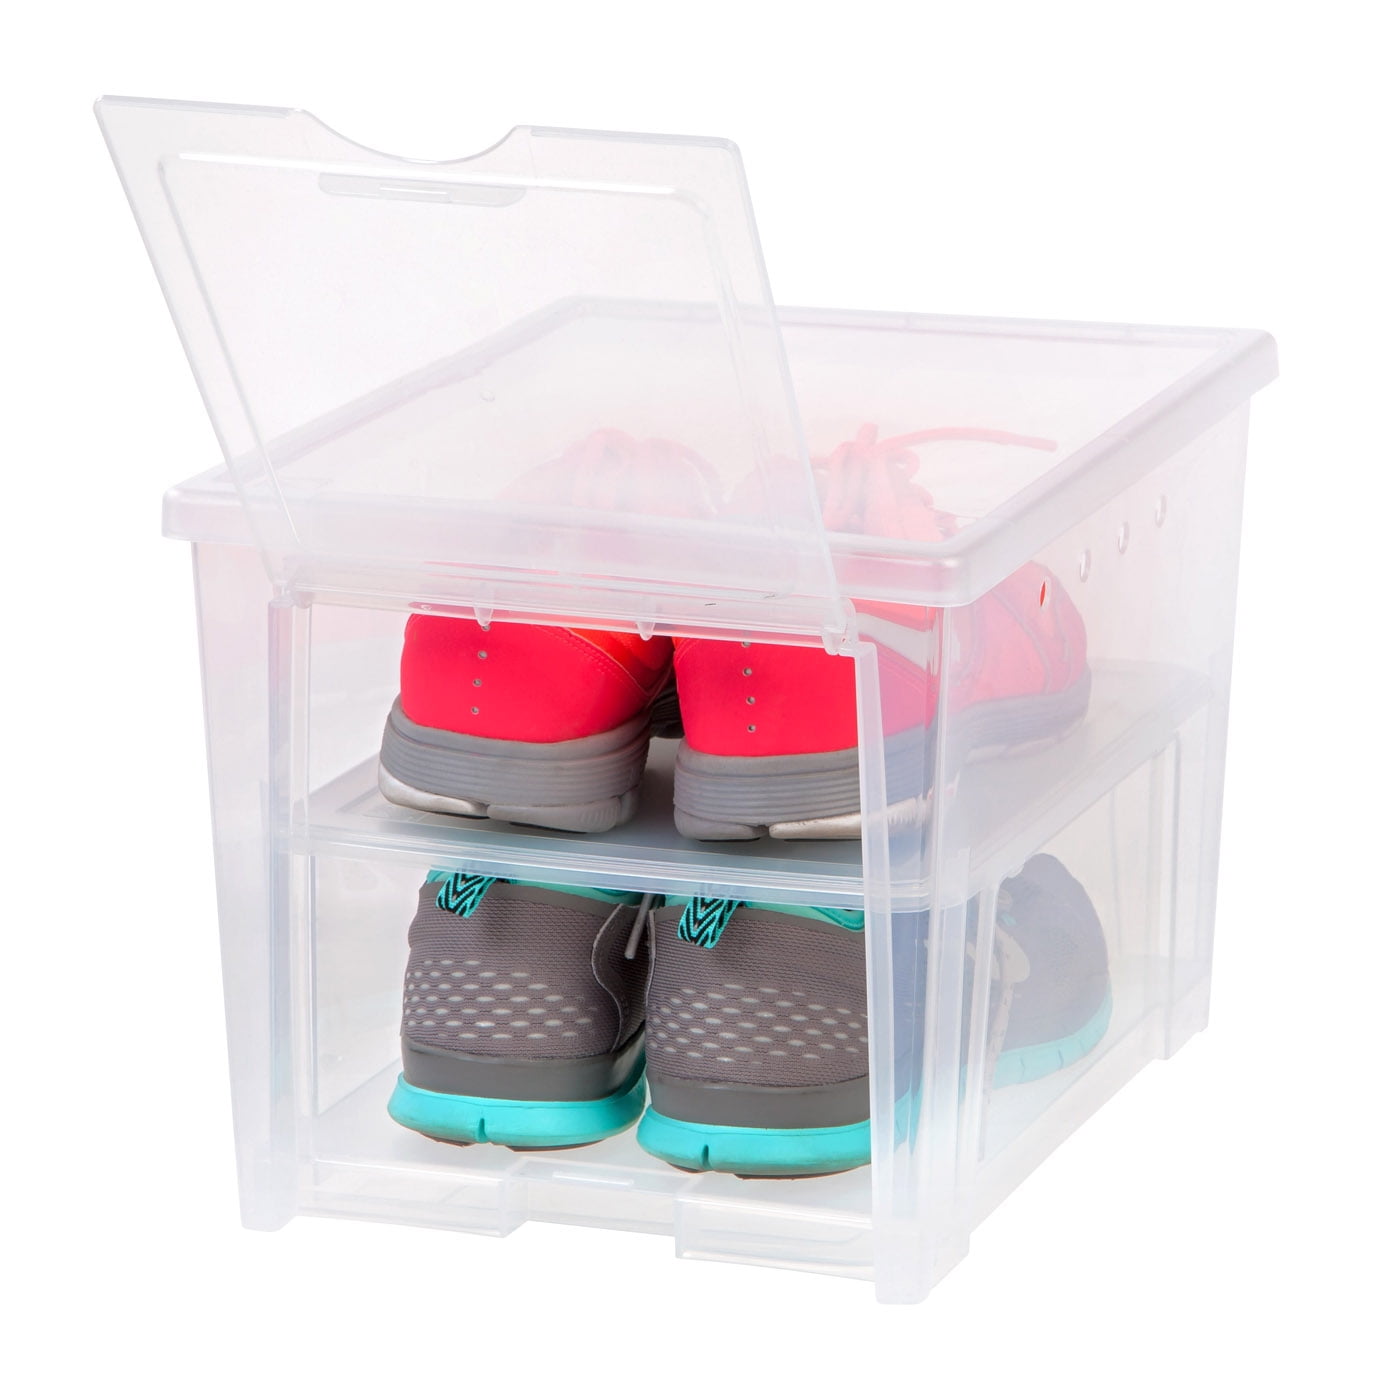 10x Ladies Shoe Box Plastic Storage Stacking Clear Boxes Transparent Unit W Lids 